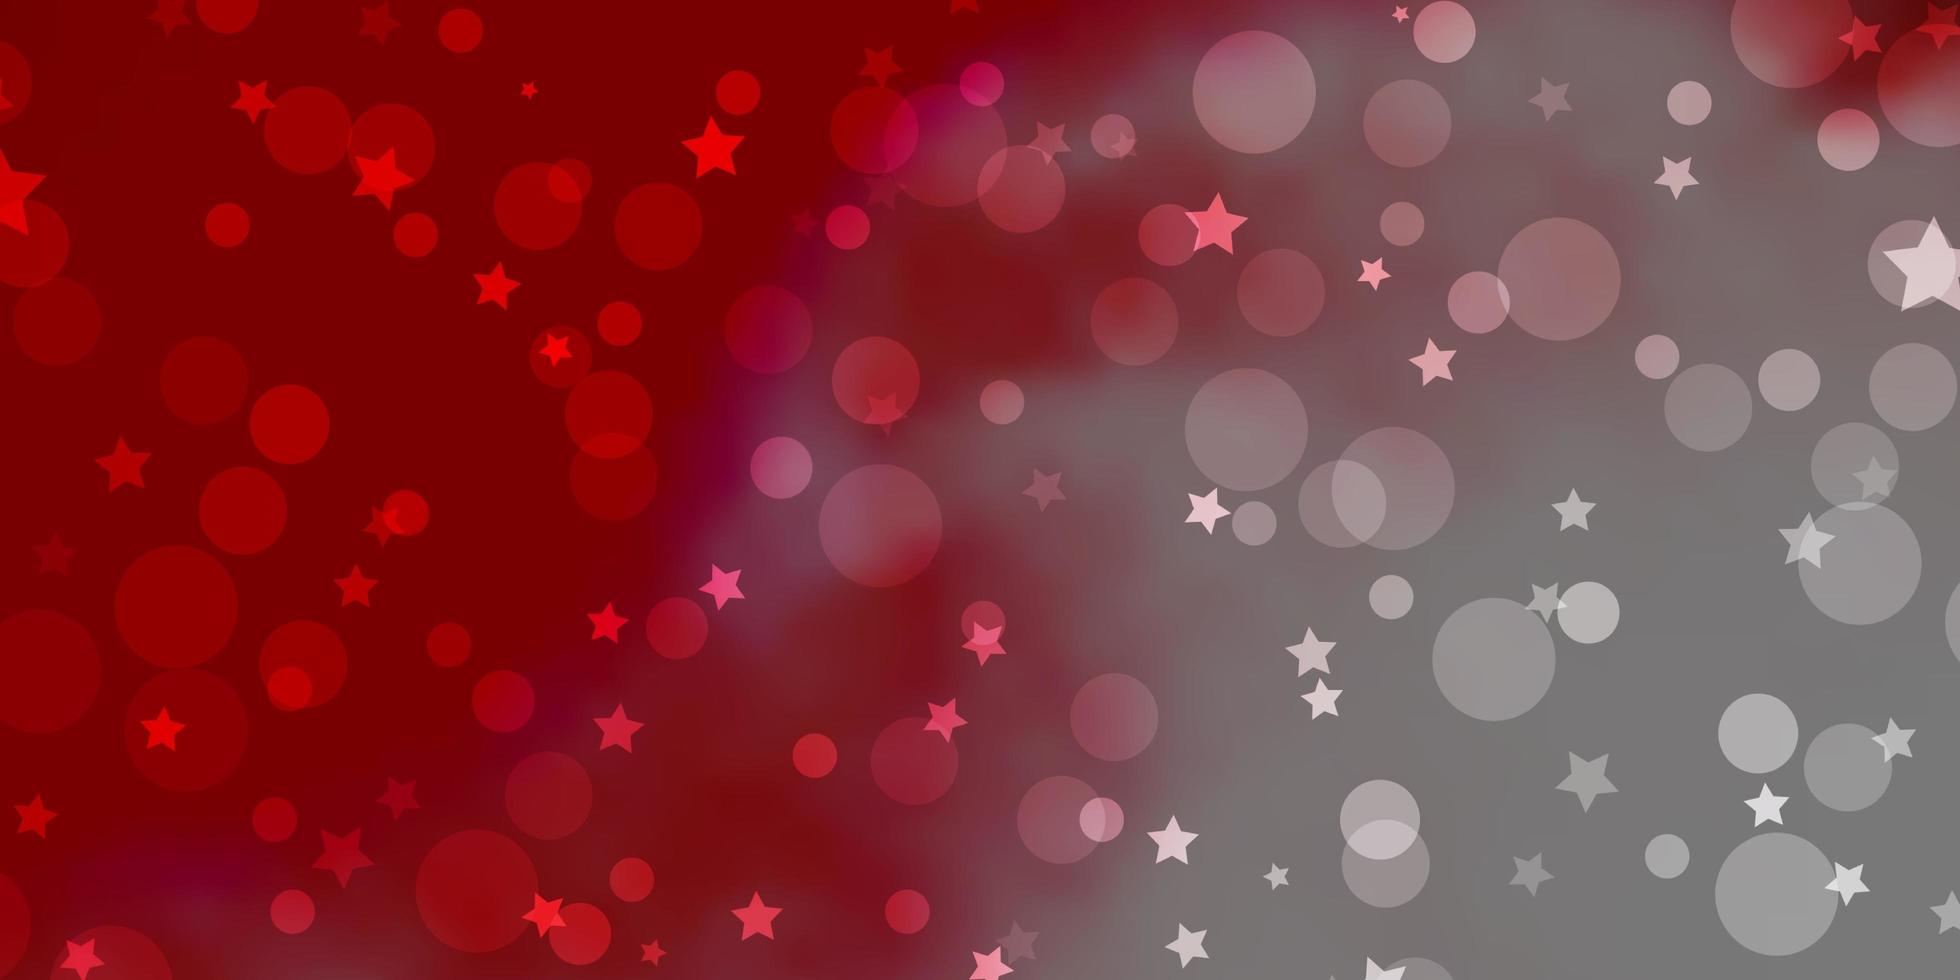 modelo de vetor vermelho claro com círculos, estrelas.